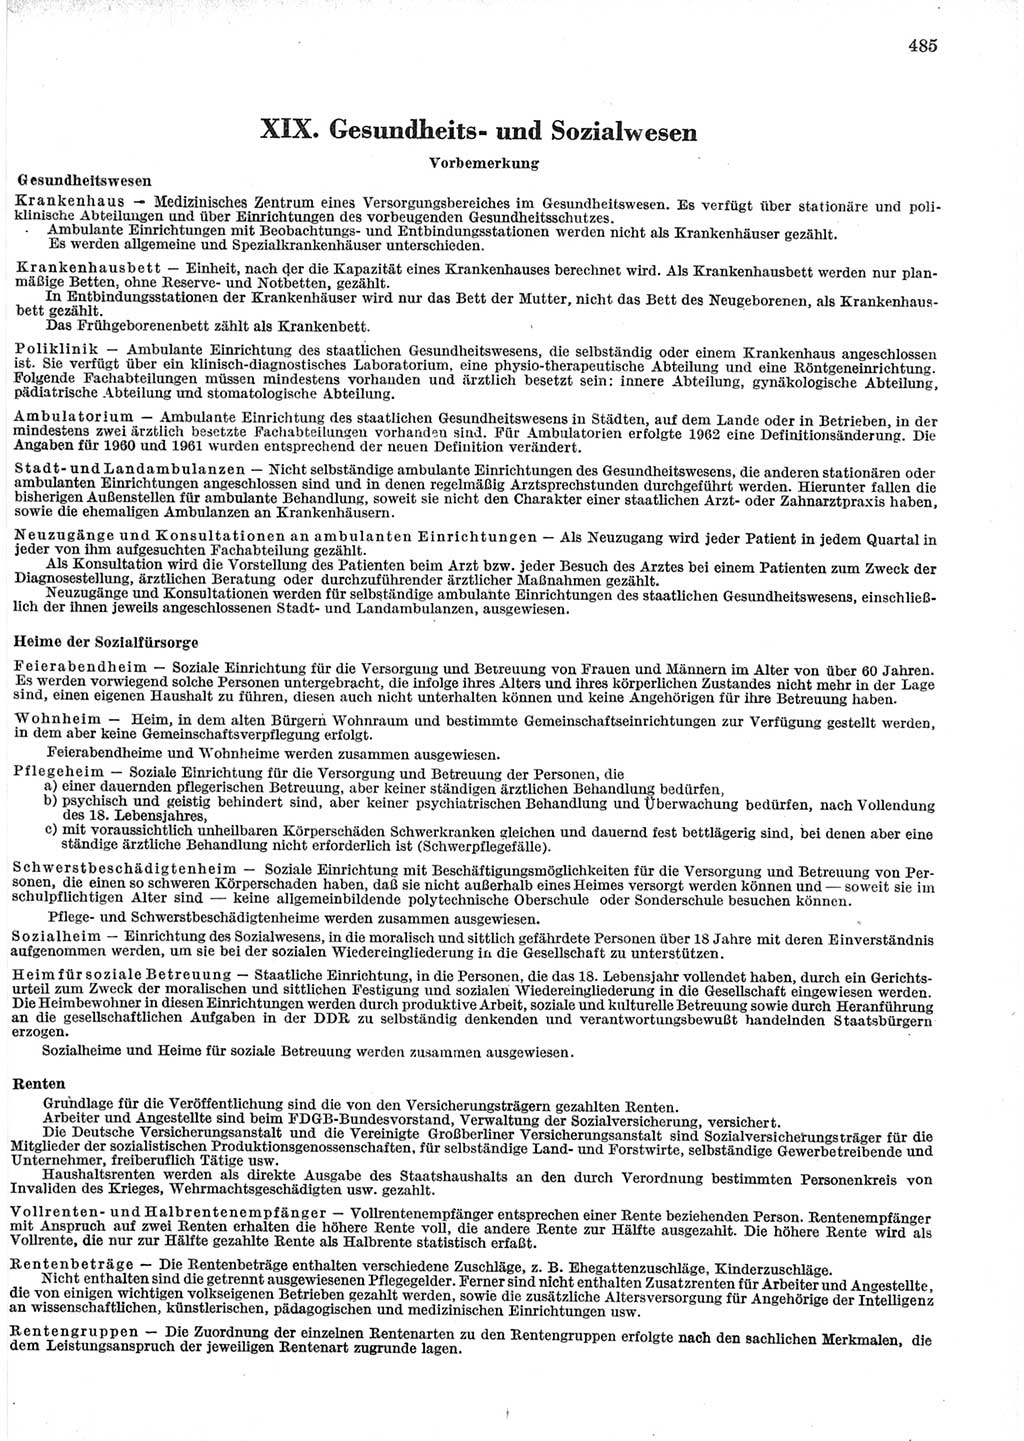 Statistisches Jahrbuch der Deutschen Demokratischen Republik (DDR) 1965, Seite 485 (Stat. Jb. DDR 1965, S. 485)